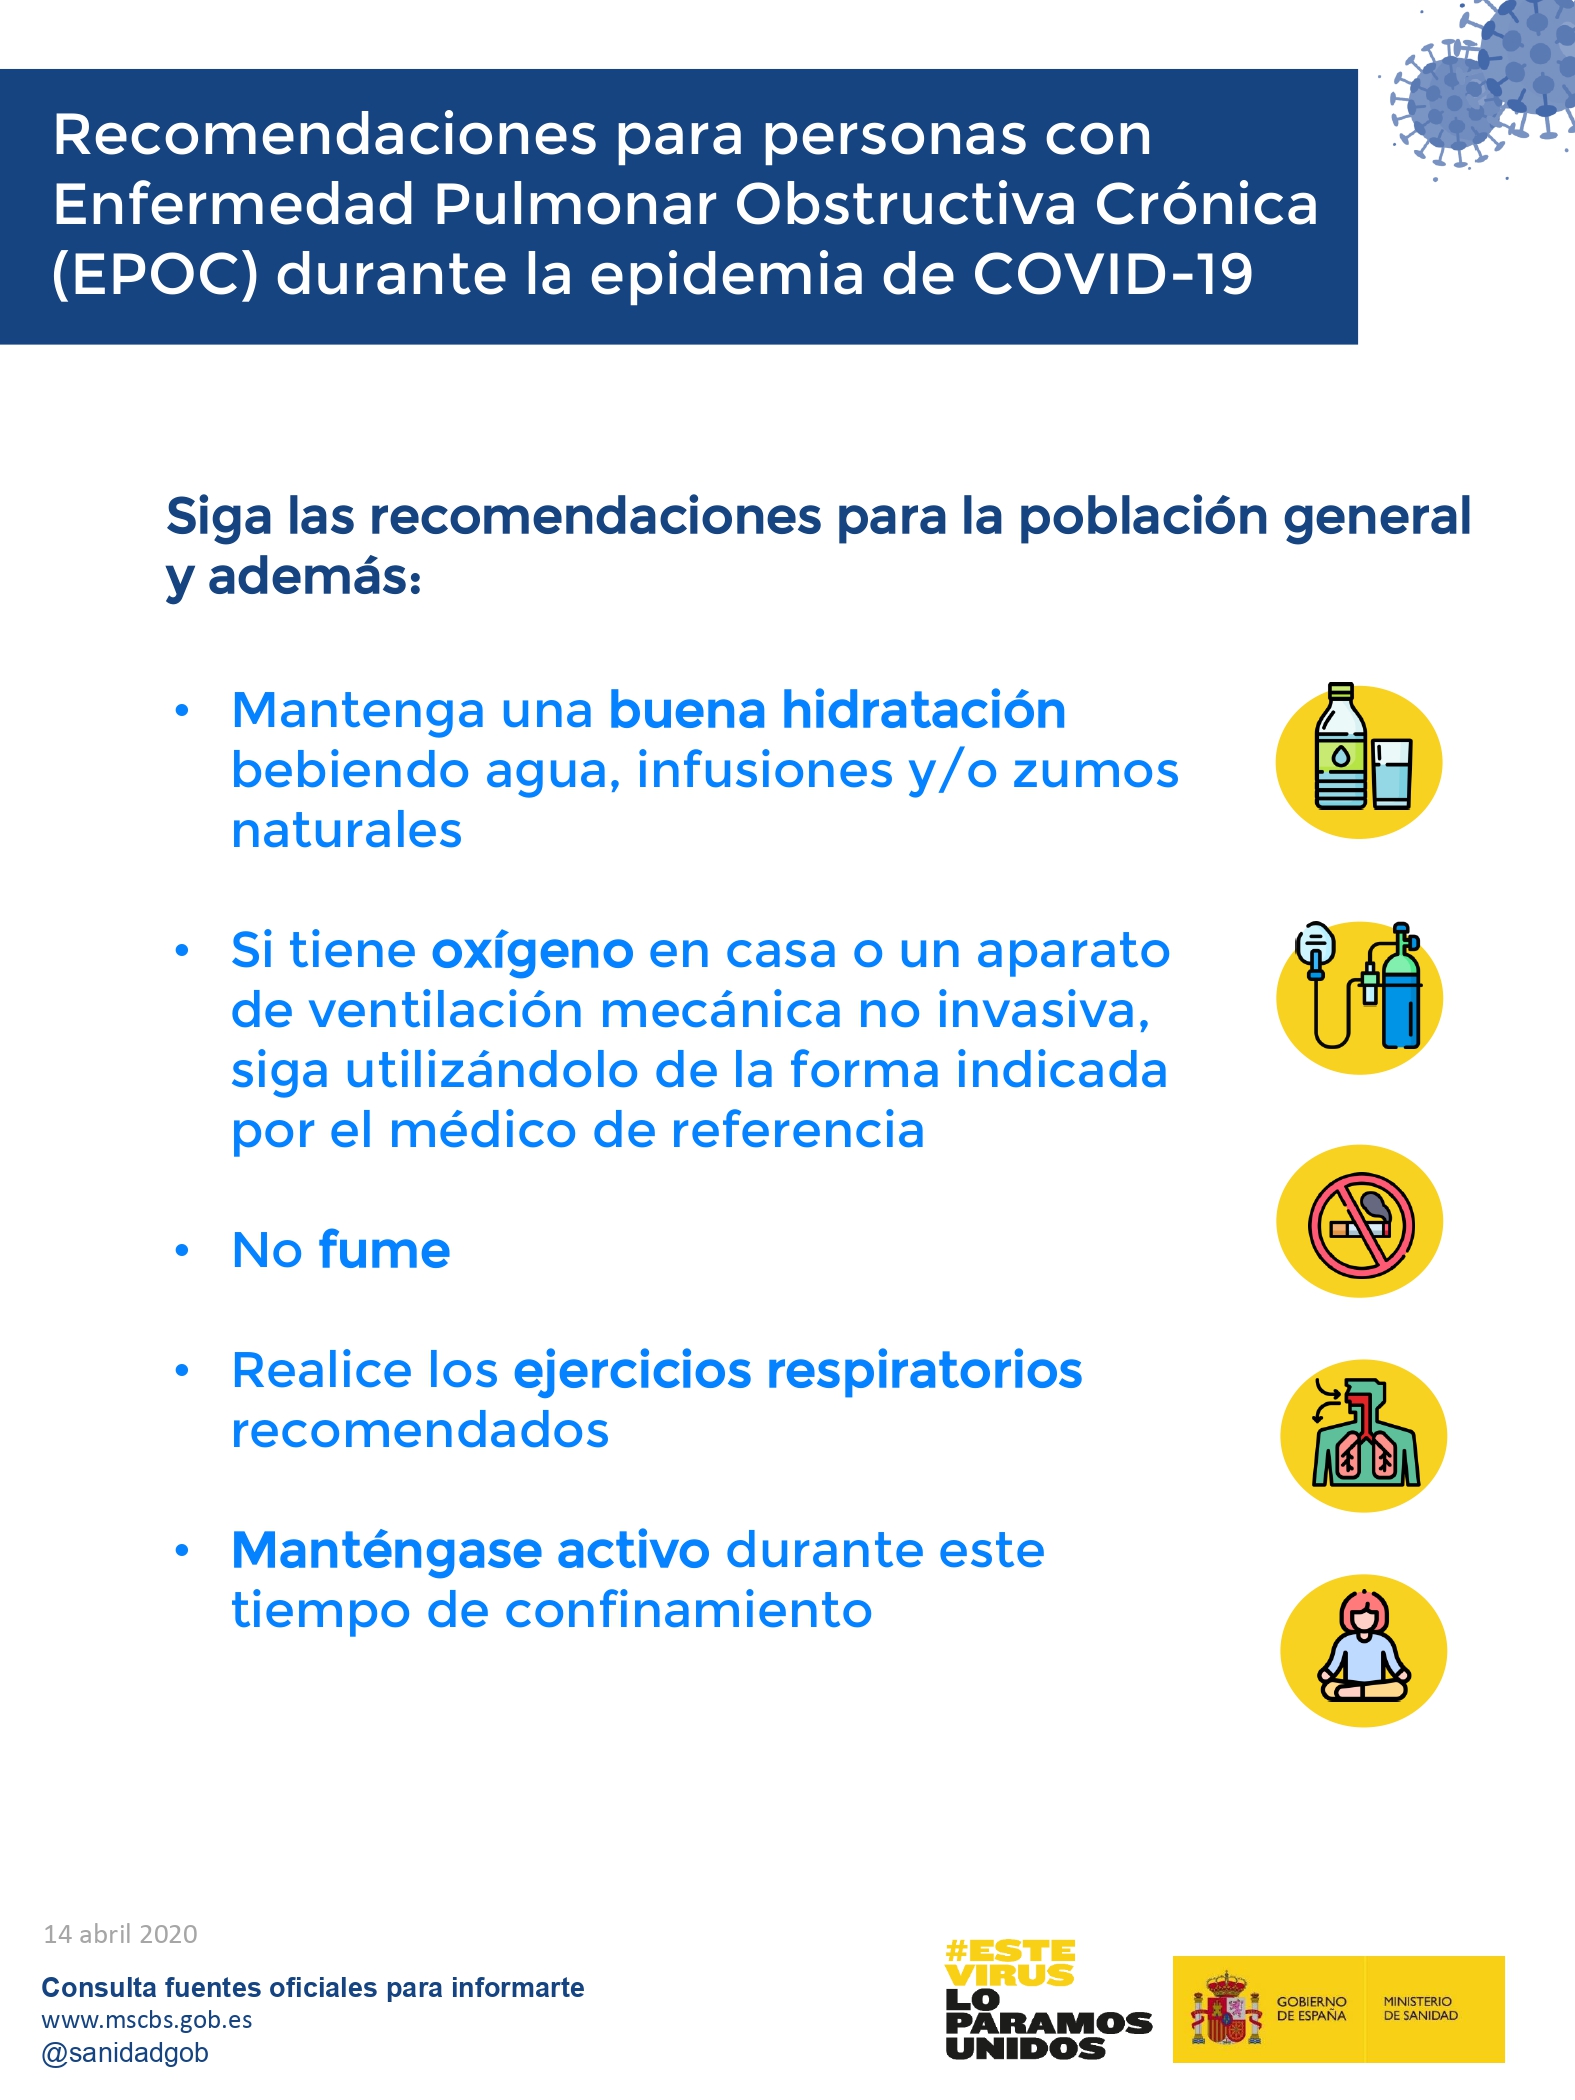 Recomendaciones para personas con Enfermedad Pulmonar Obstructiva Crónica (EPOC) durante la epidemia de COVID-19